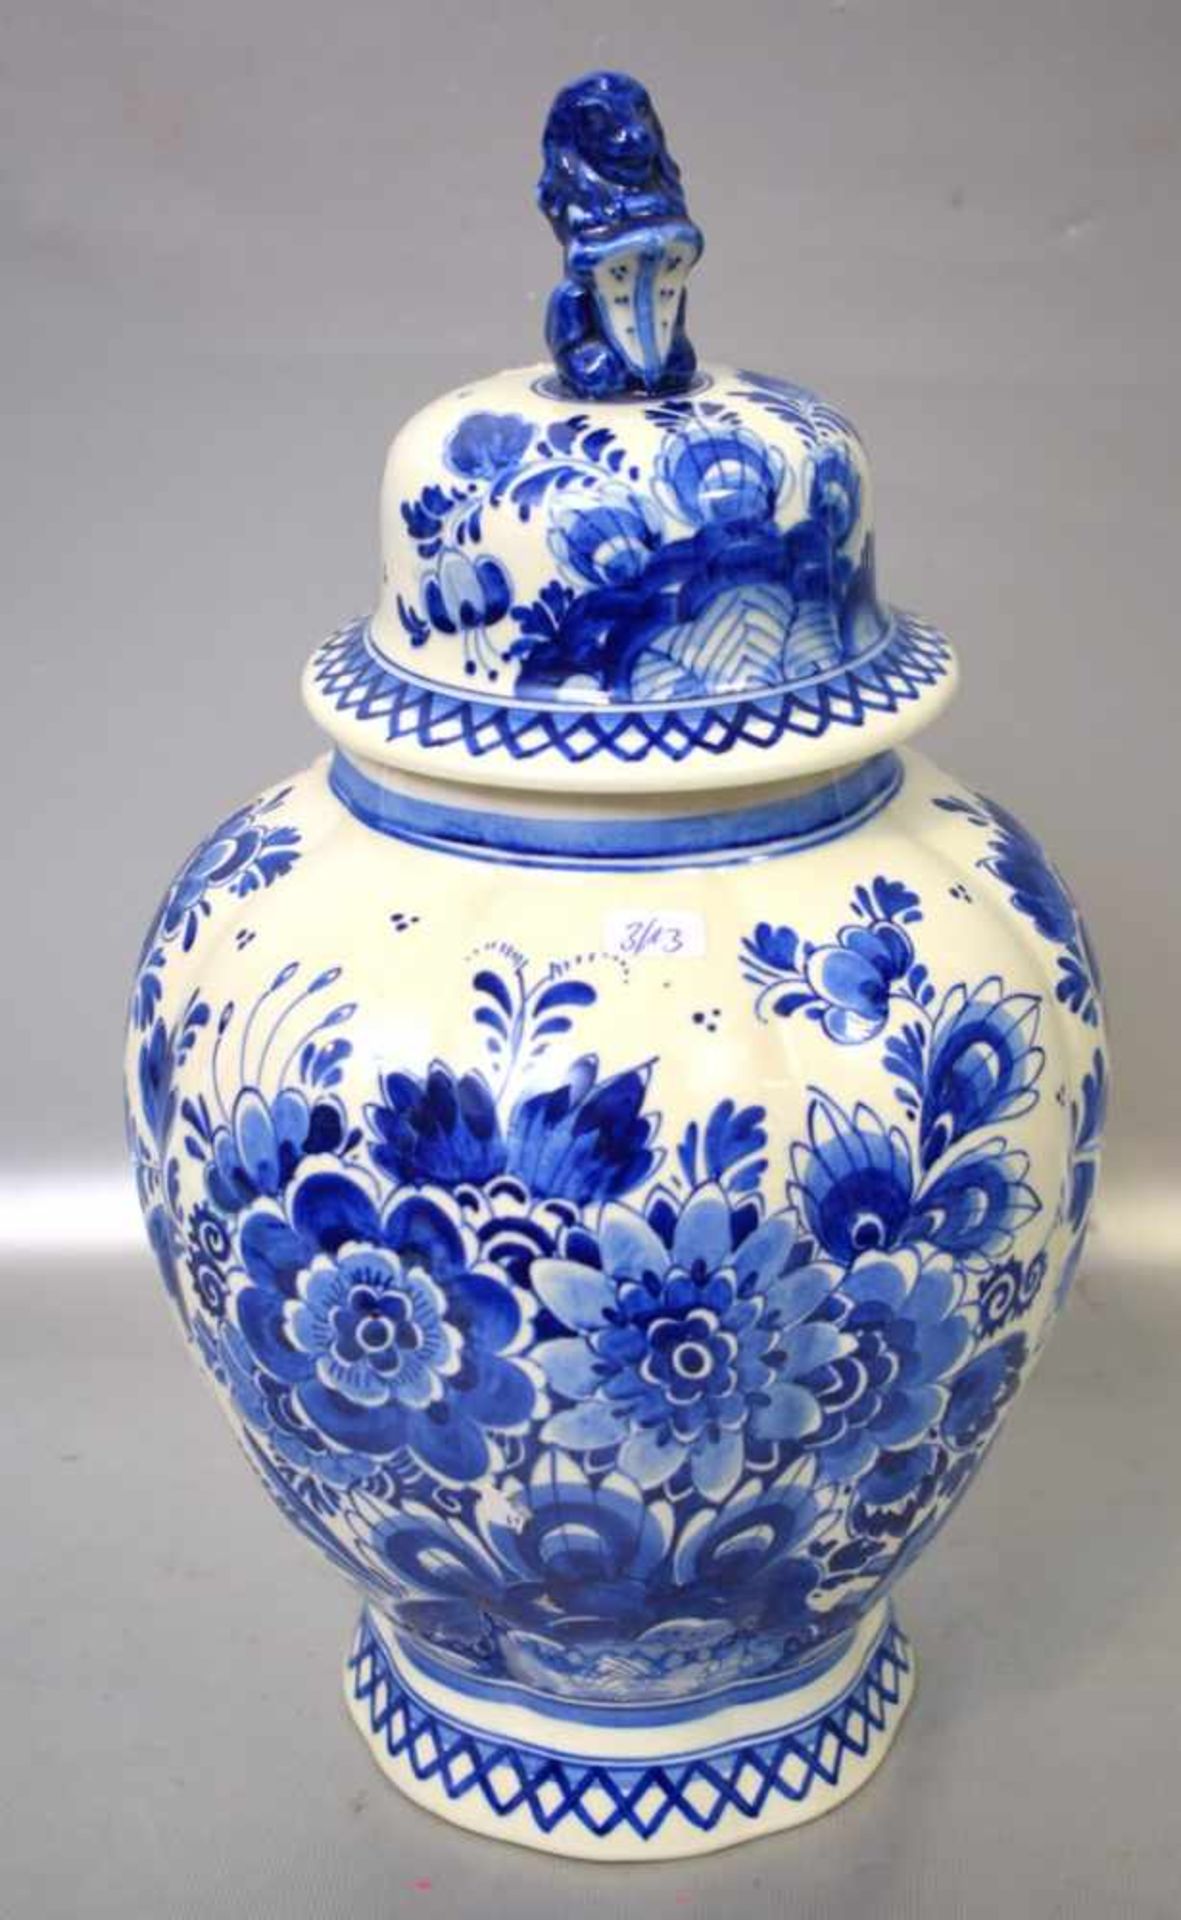 Deckelvasebeigefarben, rund, mit blauer Blumenbemalung, Deckel mit Löwe verziert, H 35 cm, FM Delft